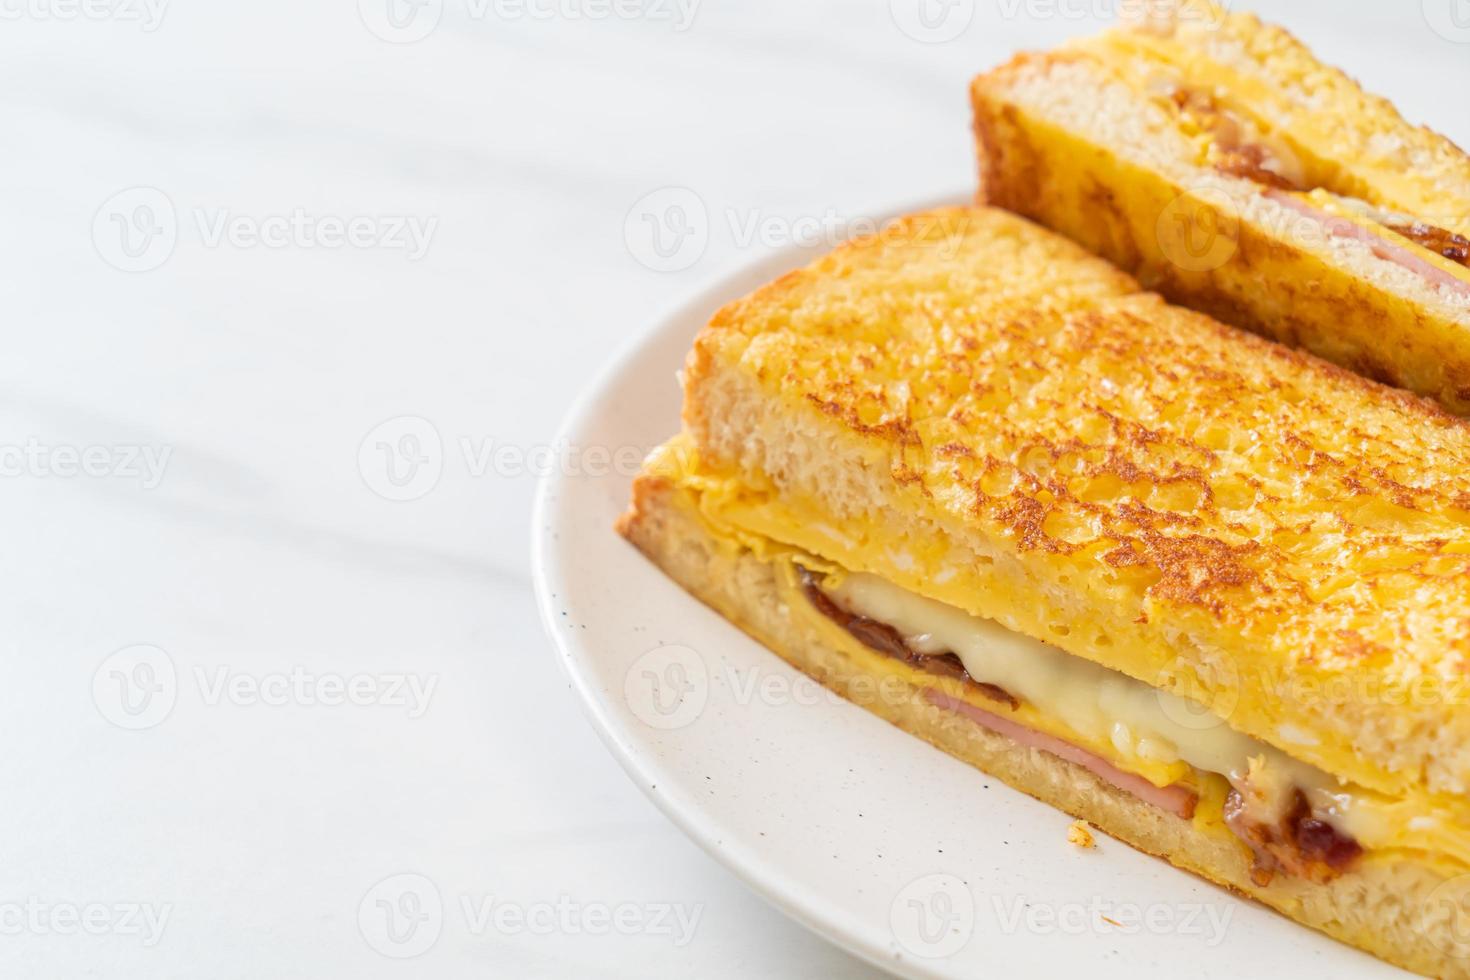 hemlagad fransk toast med skinka, bacon och ostsmörgås med ägg foto